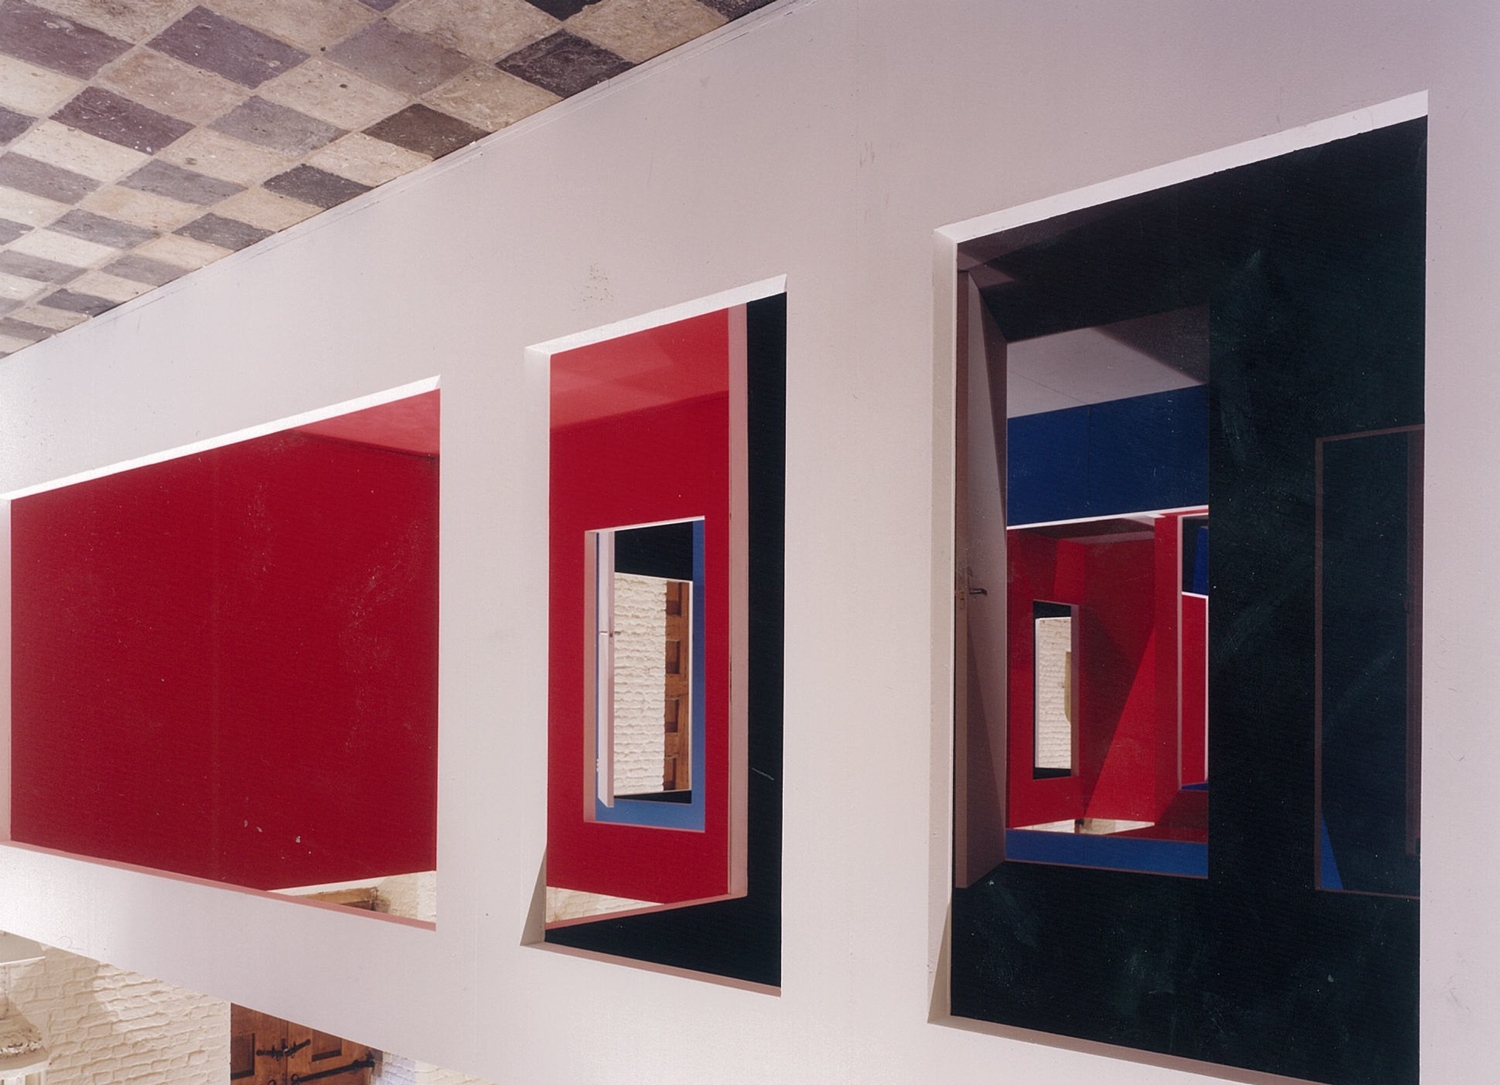 Krijn de Koning, 'Beeld voor De Vleeshal' , exhibition view, 2000 | Beeld voor De Vleeshal | Krijn de Koning